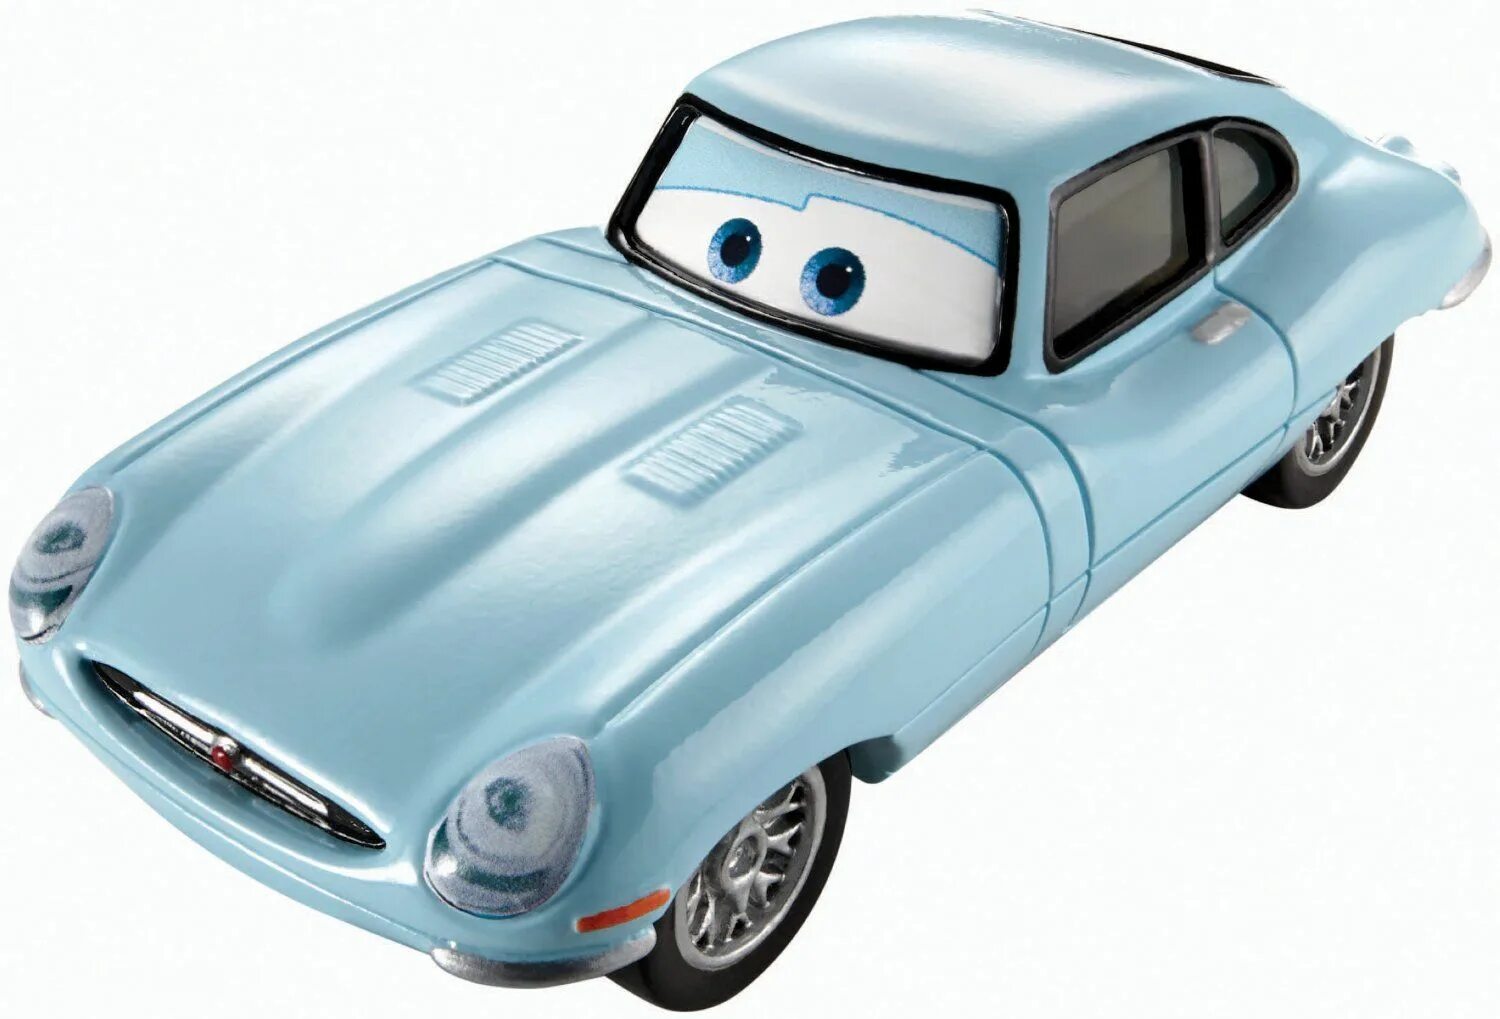 Джей Шустер Тачки 2. Финн Макмисл. Тачки 2 Леланд турбо. Mattel Disney Pixar cars. Дисней машины